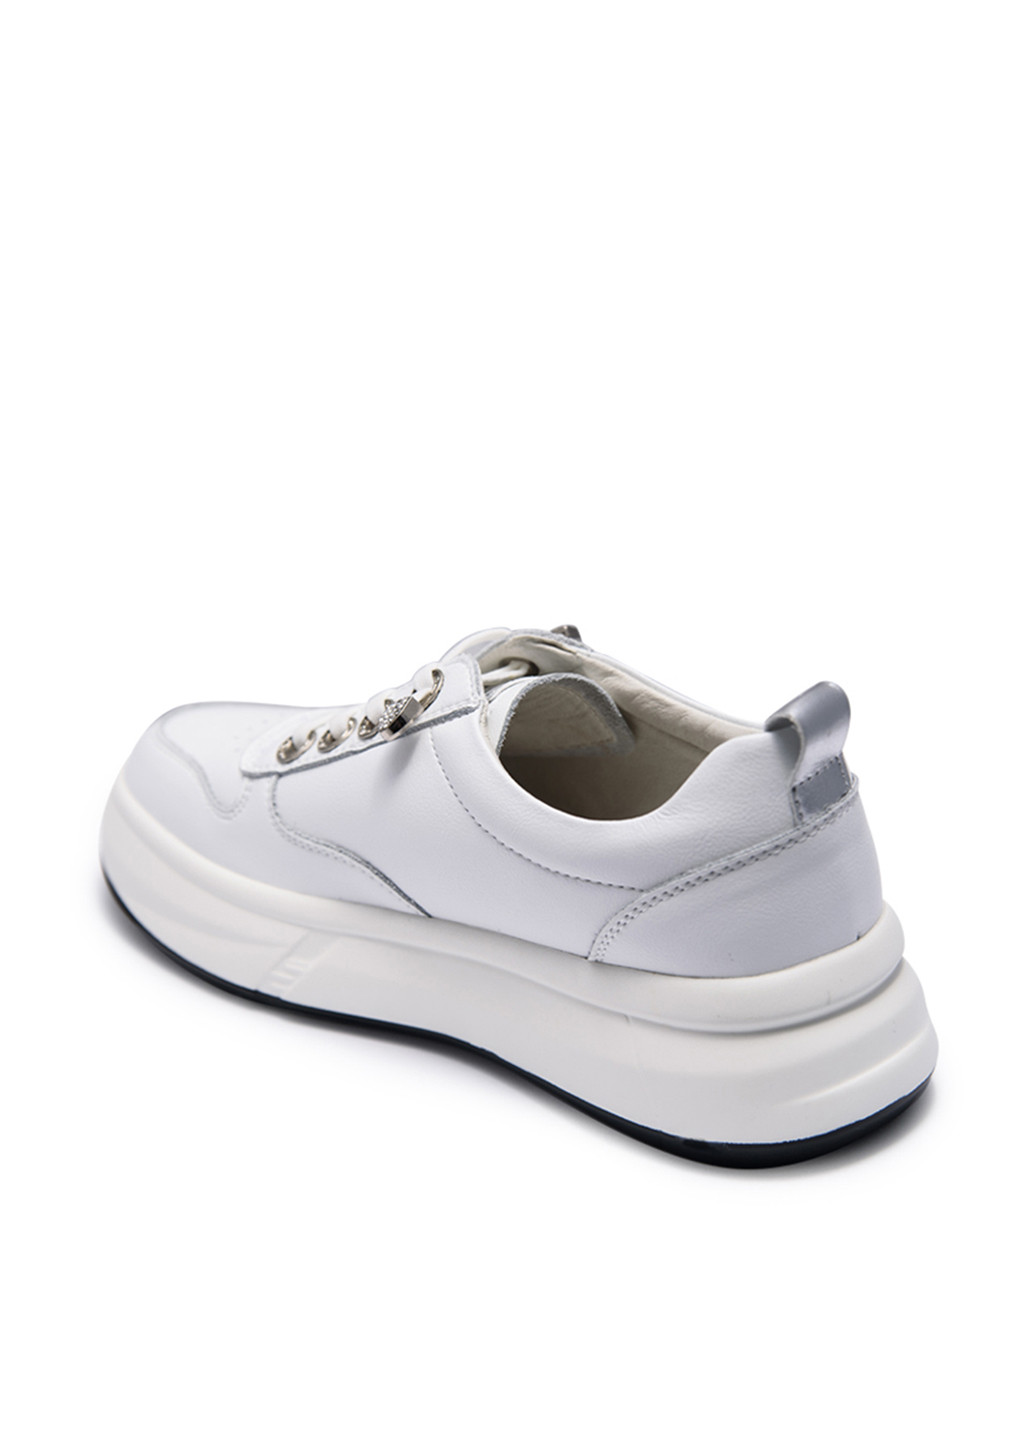 Білі осінні кросівки Lonza